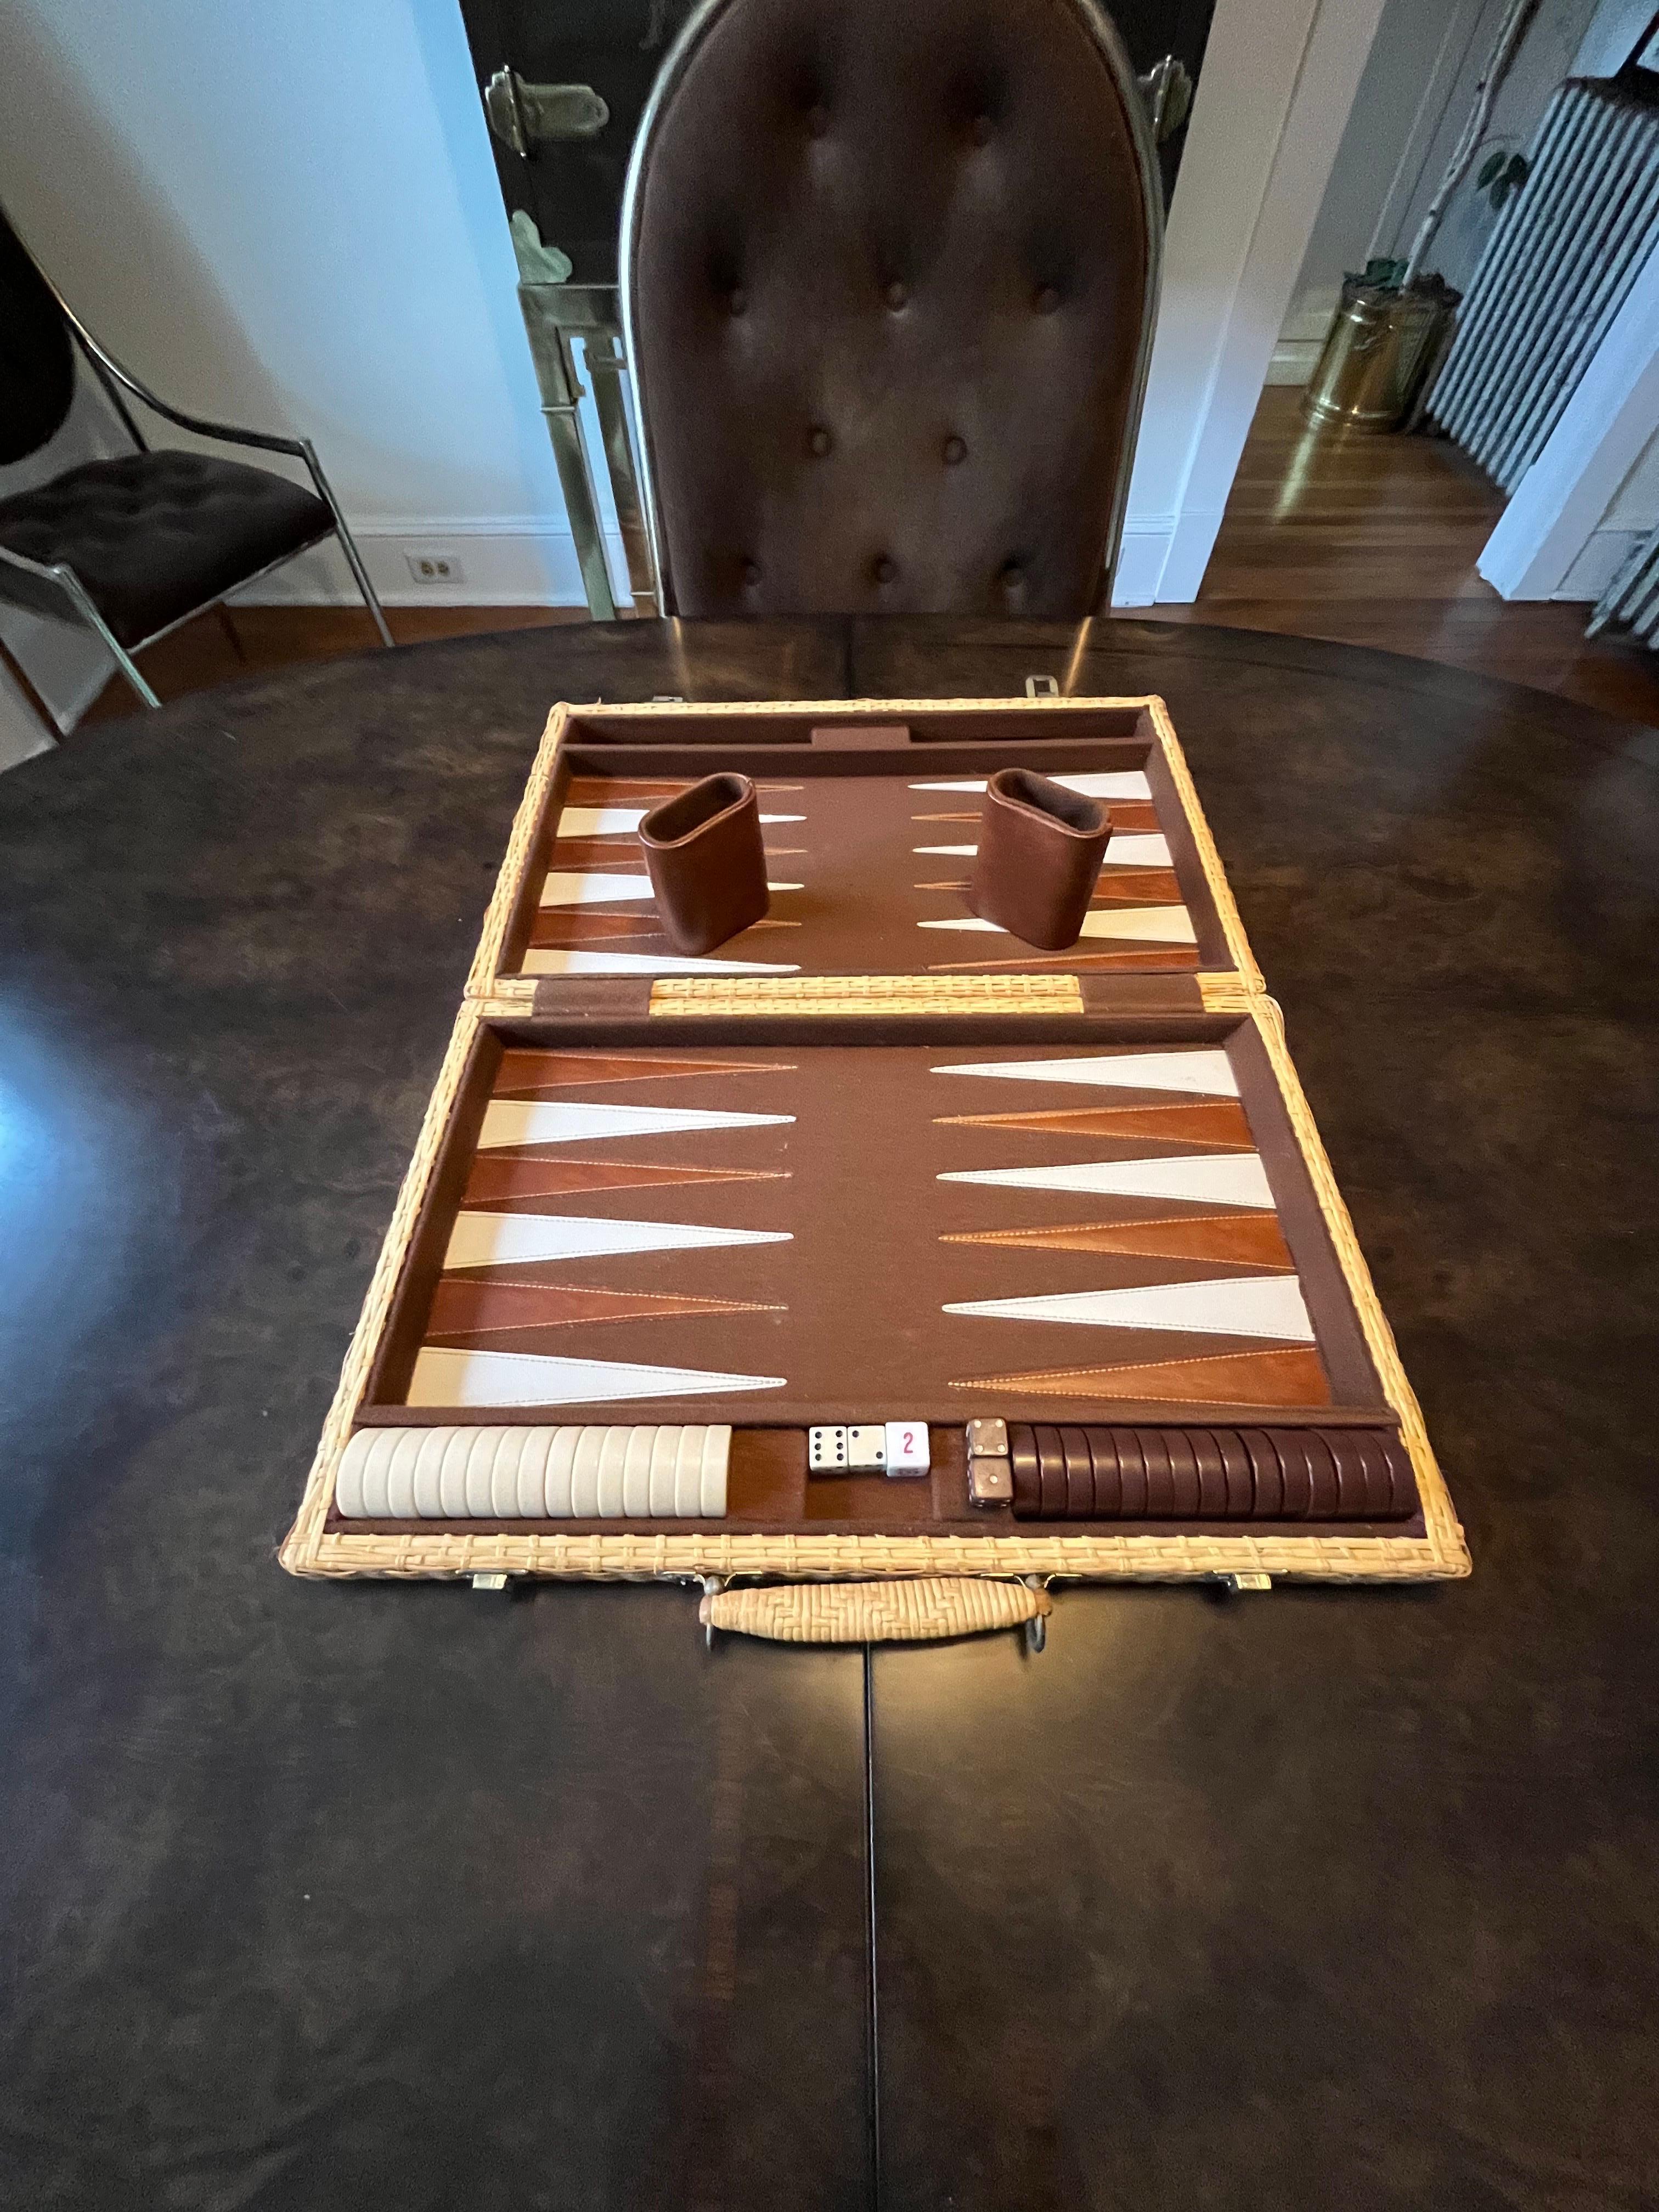 Schönes tragbares Backgammon-Brett aus Weide. Messingbeschläge und Holzrahmen, komplett in Korbgeflecht eingewickelt. Innenseite aus braunem Filz und braune und cremefarbene Dreiecke zum Spielen. Das Spielbrett enthält alle braunen und cremefarbenen